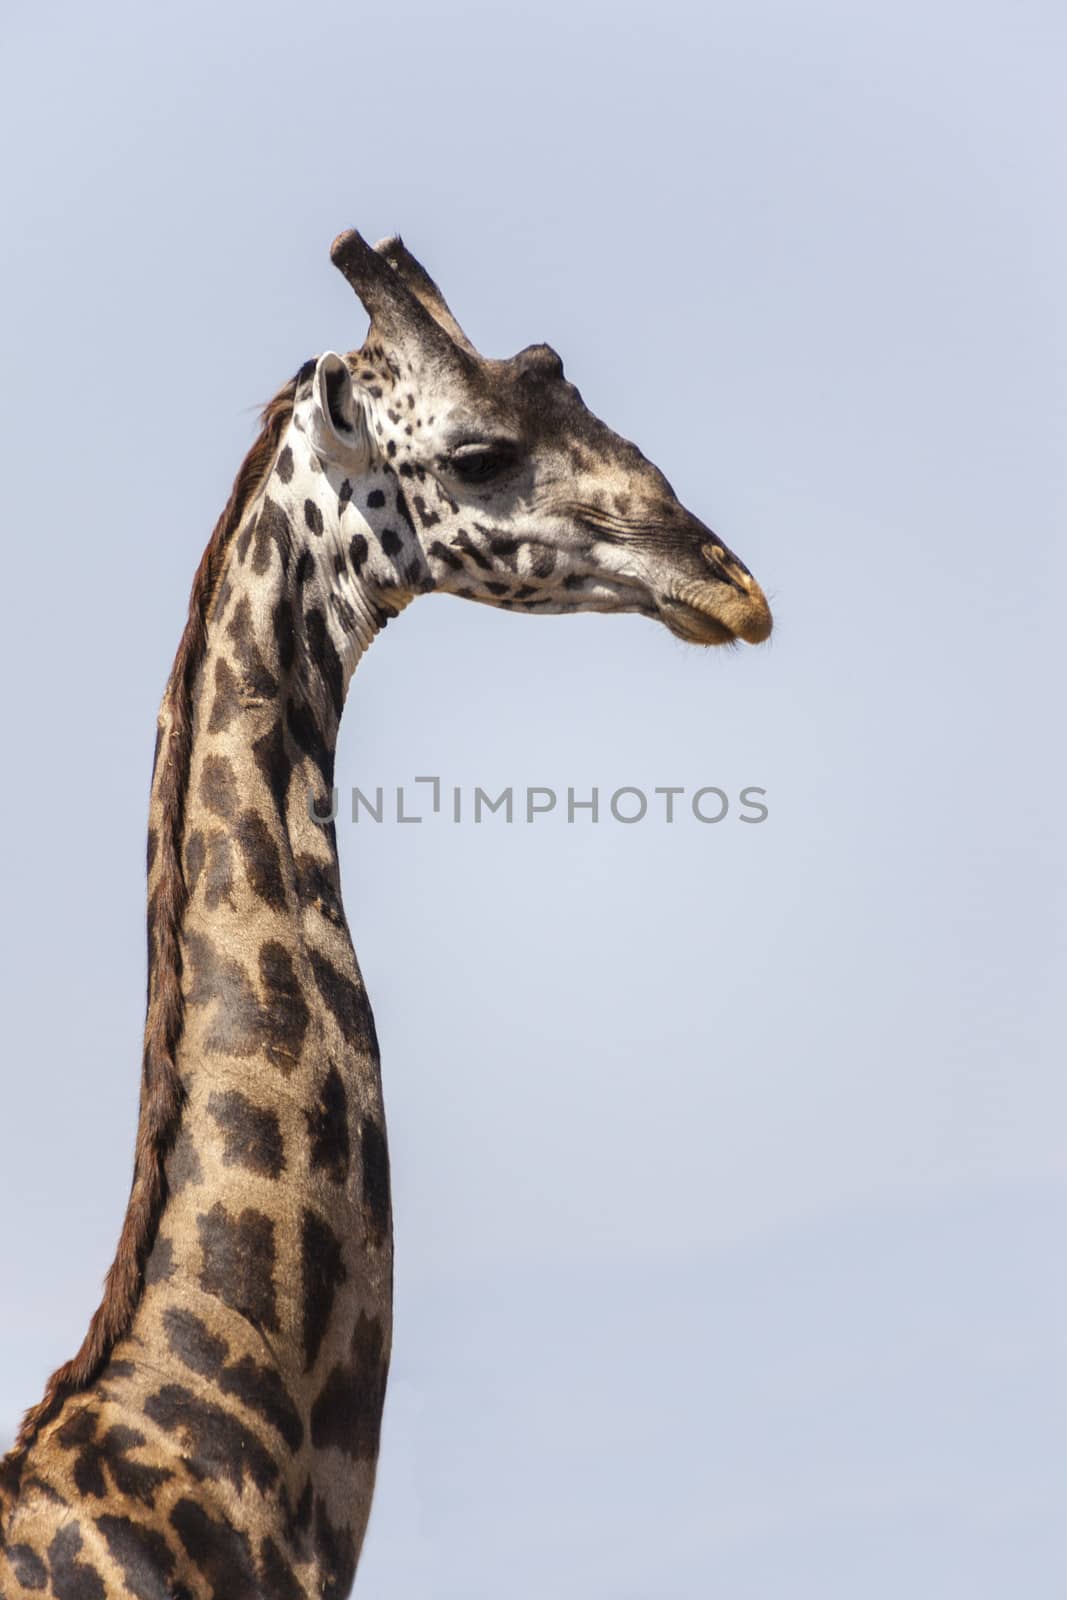 Profile of a giraffe against blue sky in Tanzania